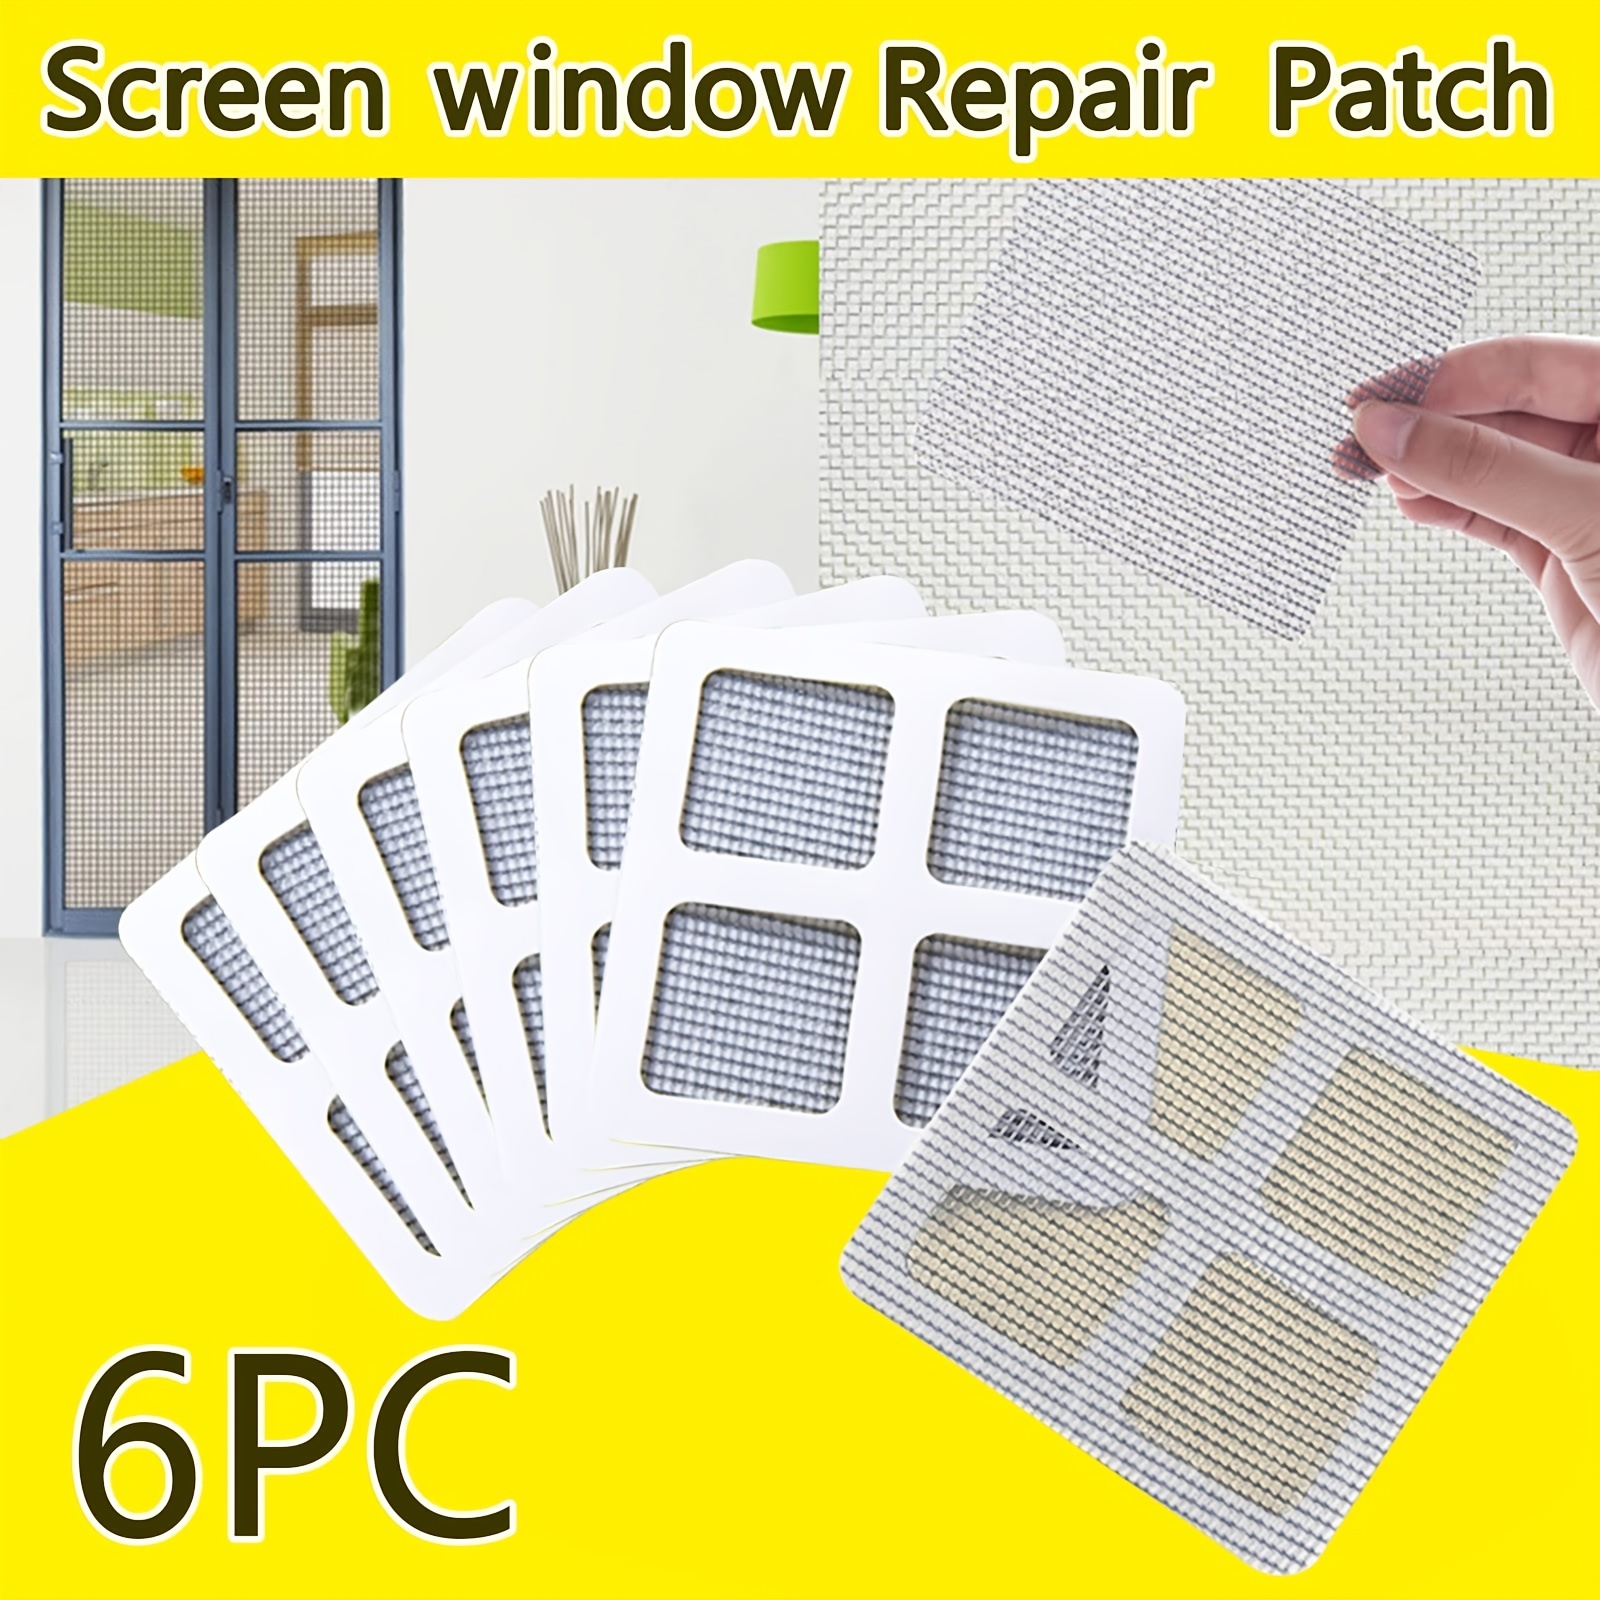 Window Screen Repair Kit Tape,Screen Repair Kit for Windows or